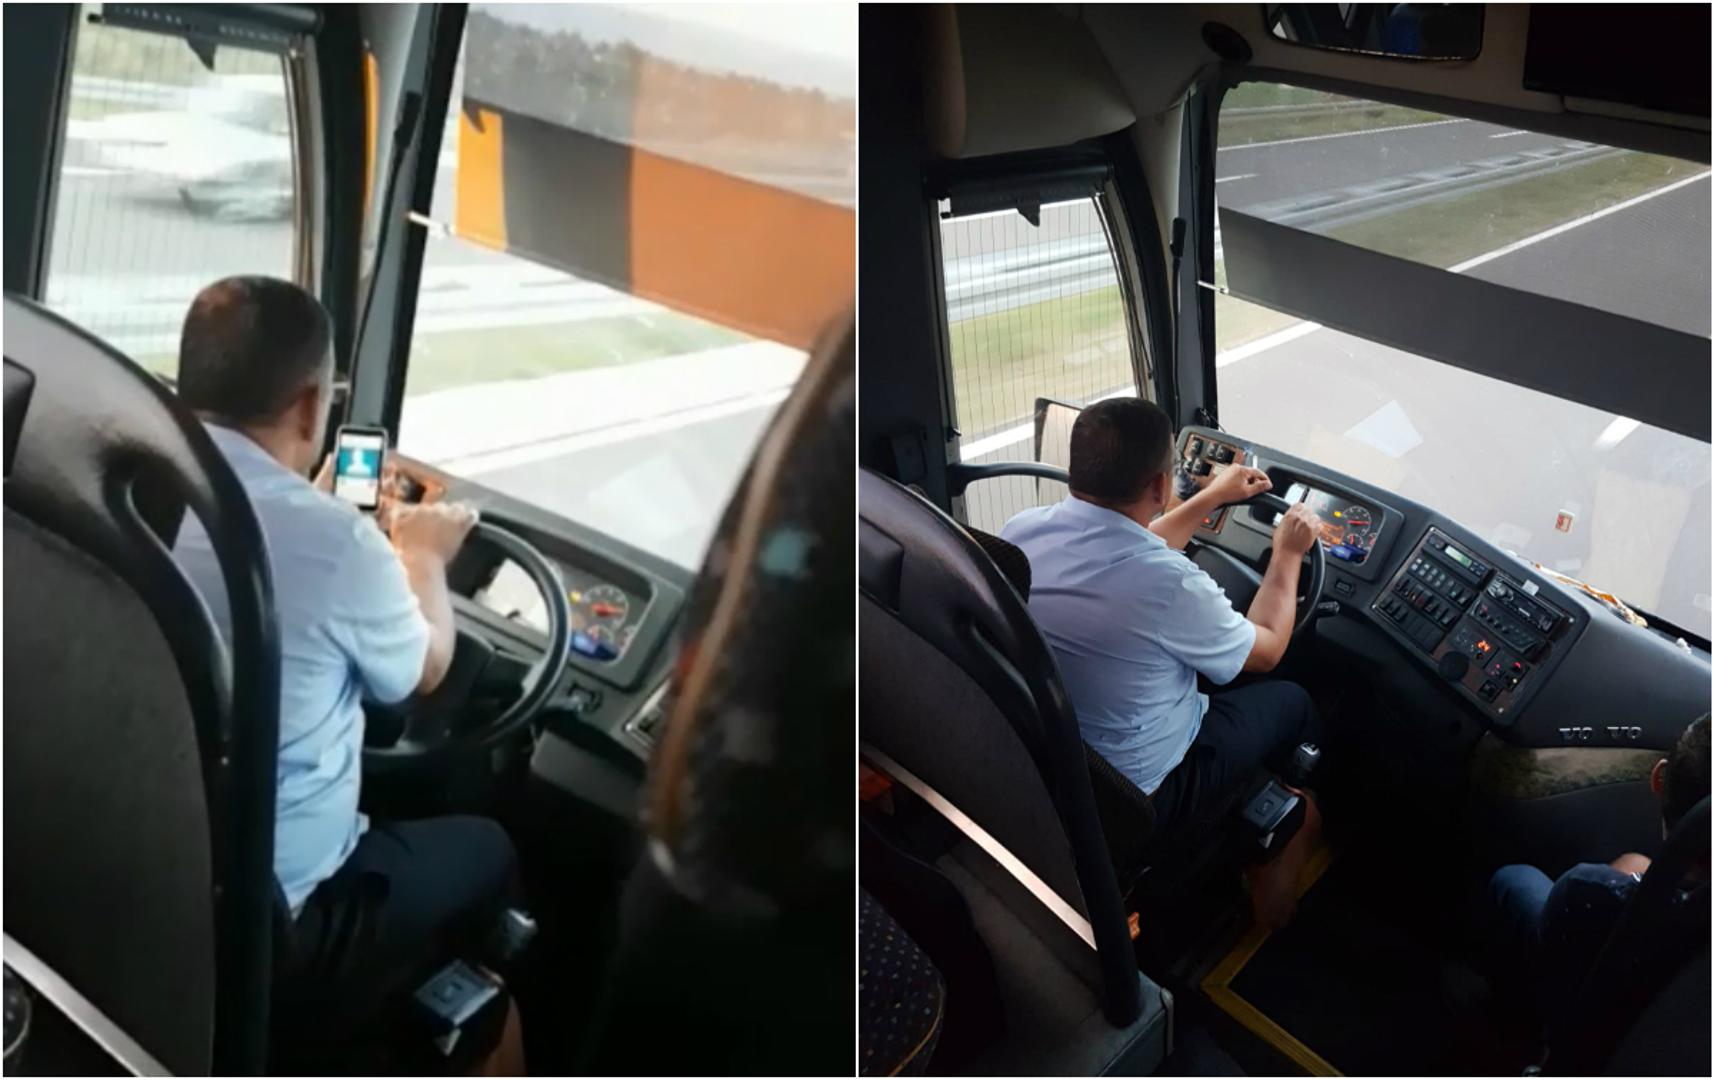 Jedna putnica doživjela je vrlo neugodno iskustvo putujući u autobusu od Zadra do Dubrovnika. Vozač autobusa bio je prema njoj nepristojan, a tijekom vožnje je pušio i koristio mobitel.